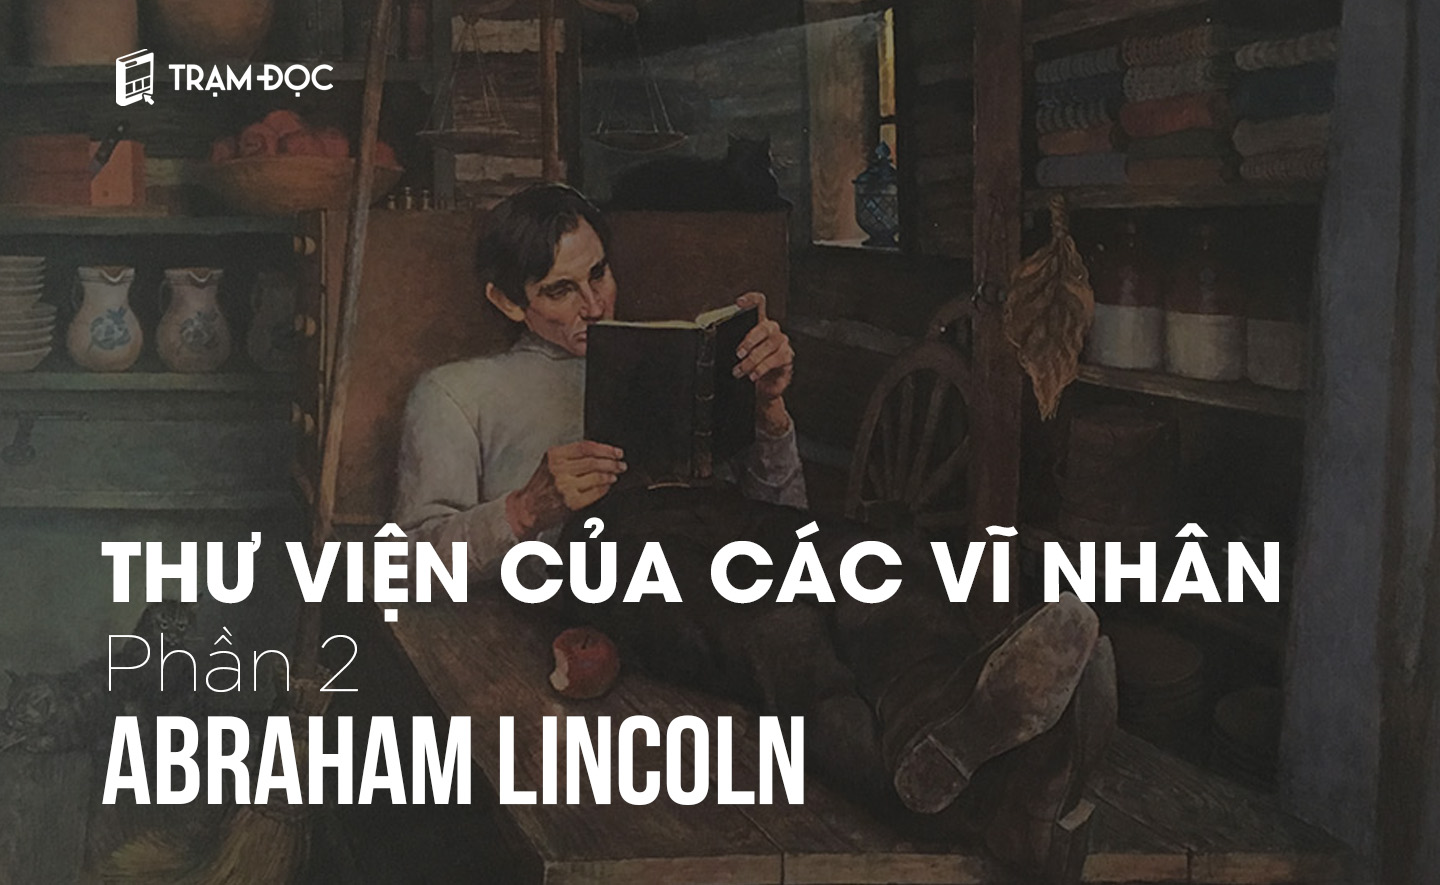 THƯ VIỆN CỦA CÁC VĨ NHÂN (P2): Thư viện của Abraham Lincoln